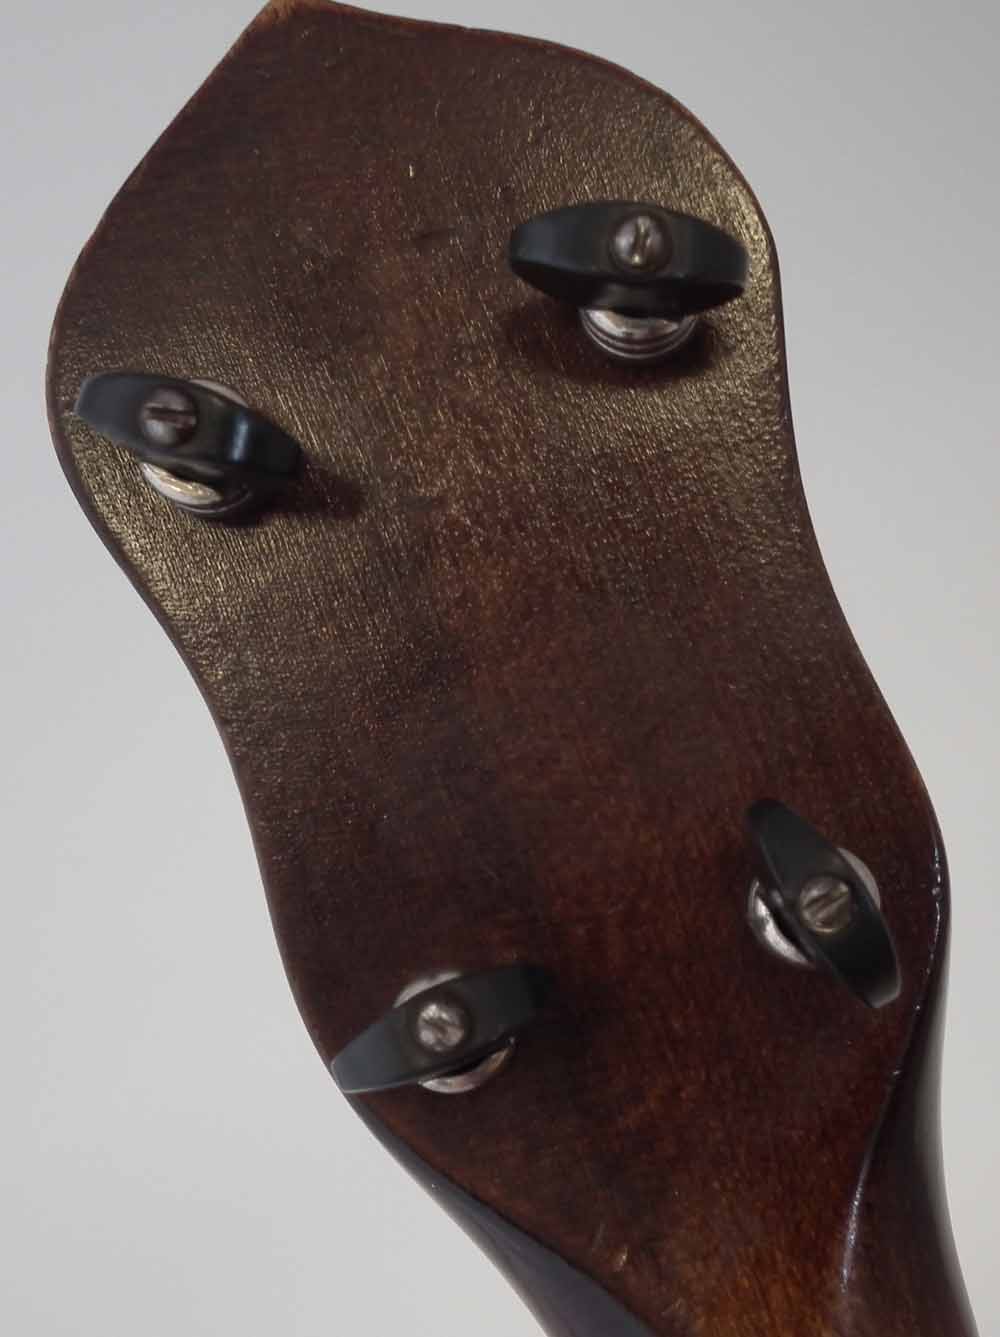 Gibson UB2 Banjolele or Ukulele Banjo with fourteen fret neck, 55cm overall length - Image 8 of 9